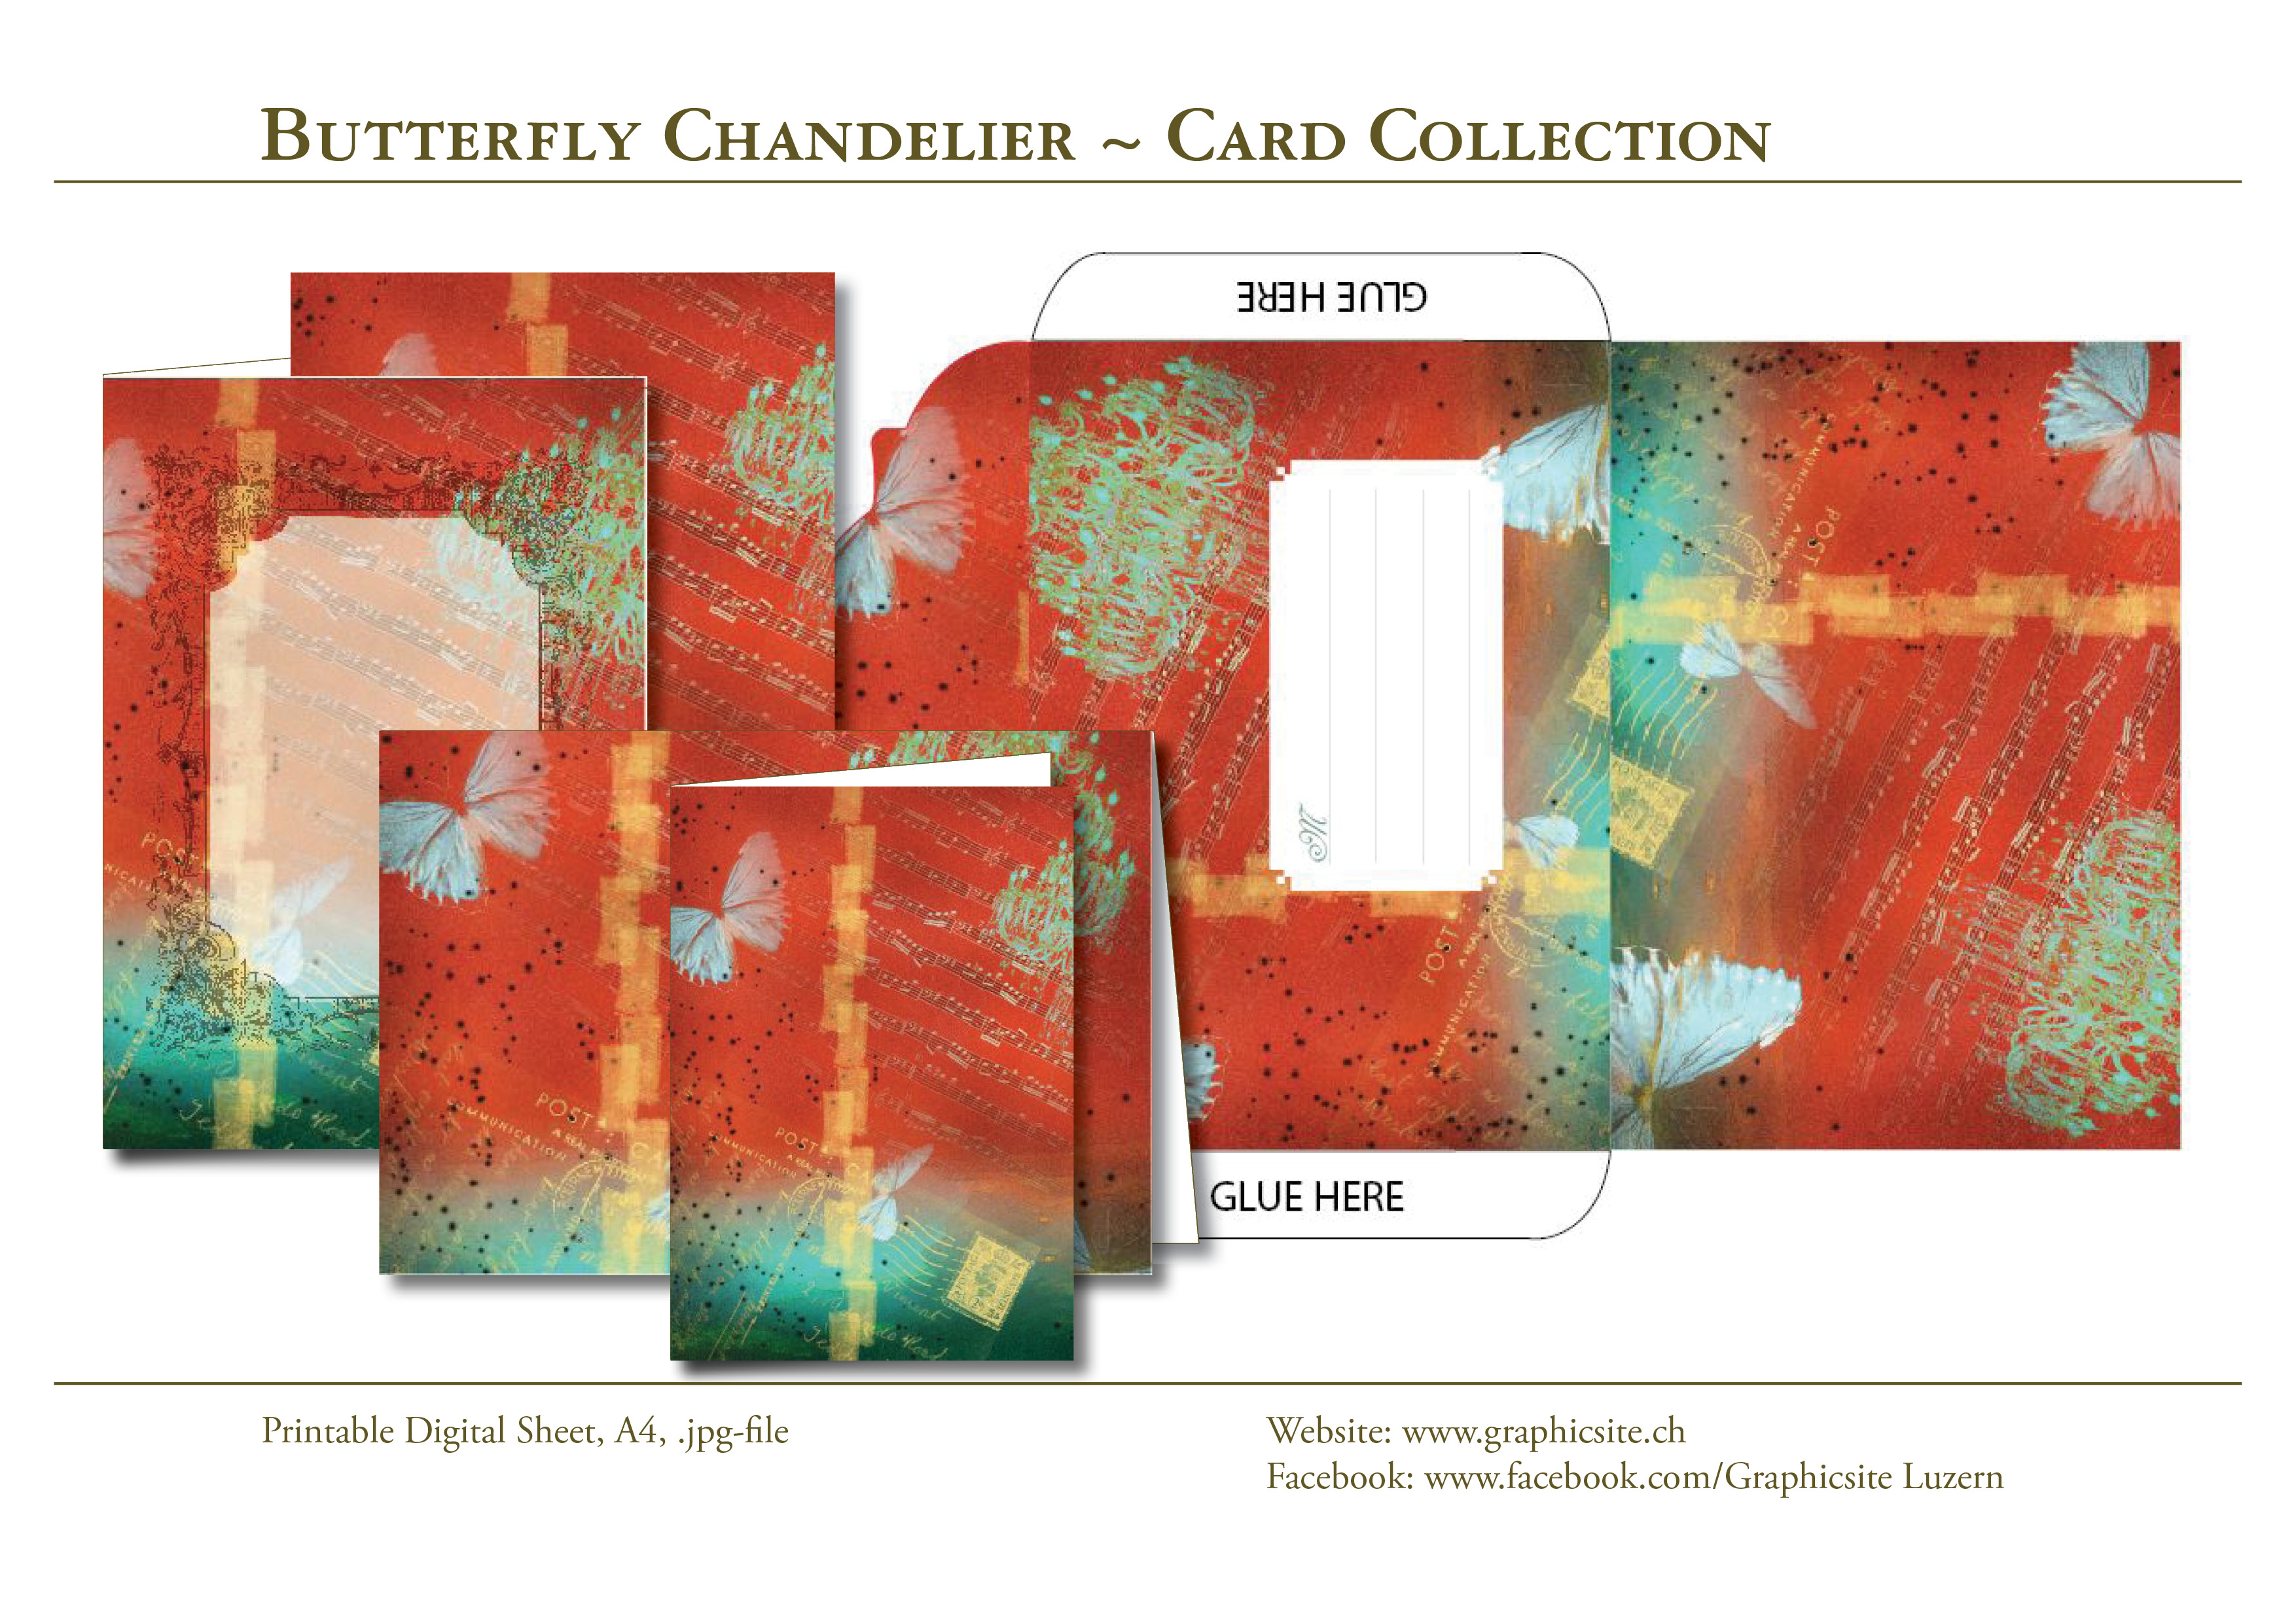 ButterflyChandelier - Kollektion - ArtJournaling - Grafiker Luzern, Schweiz